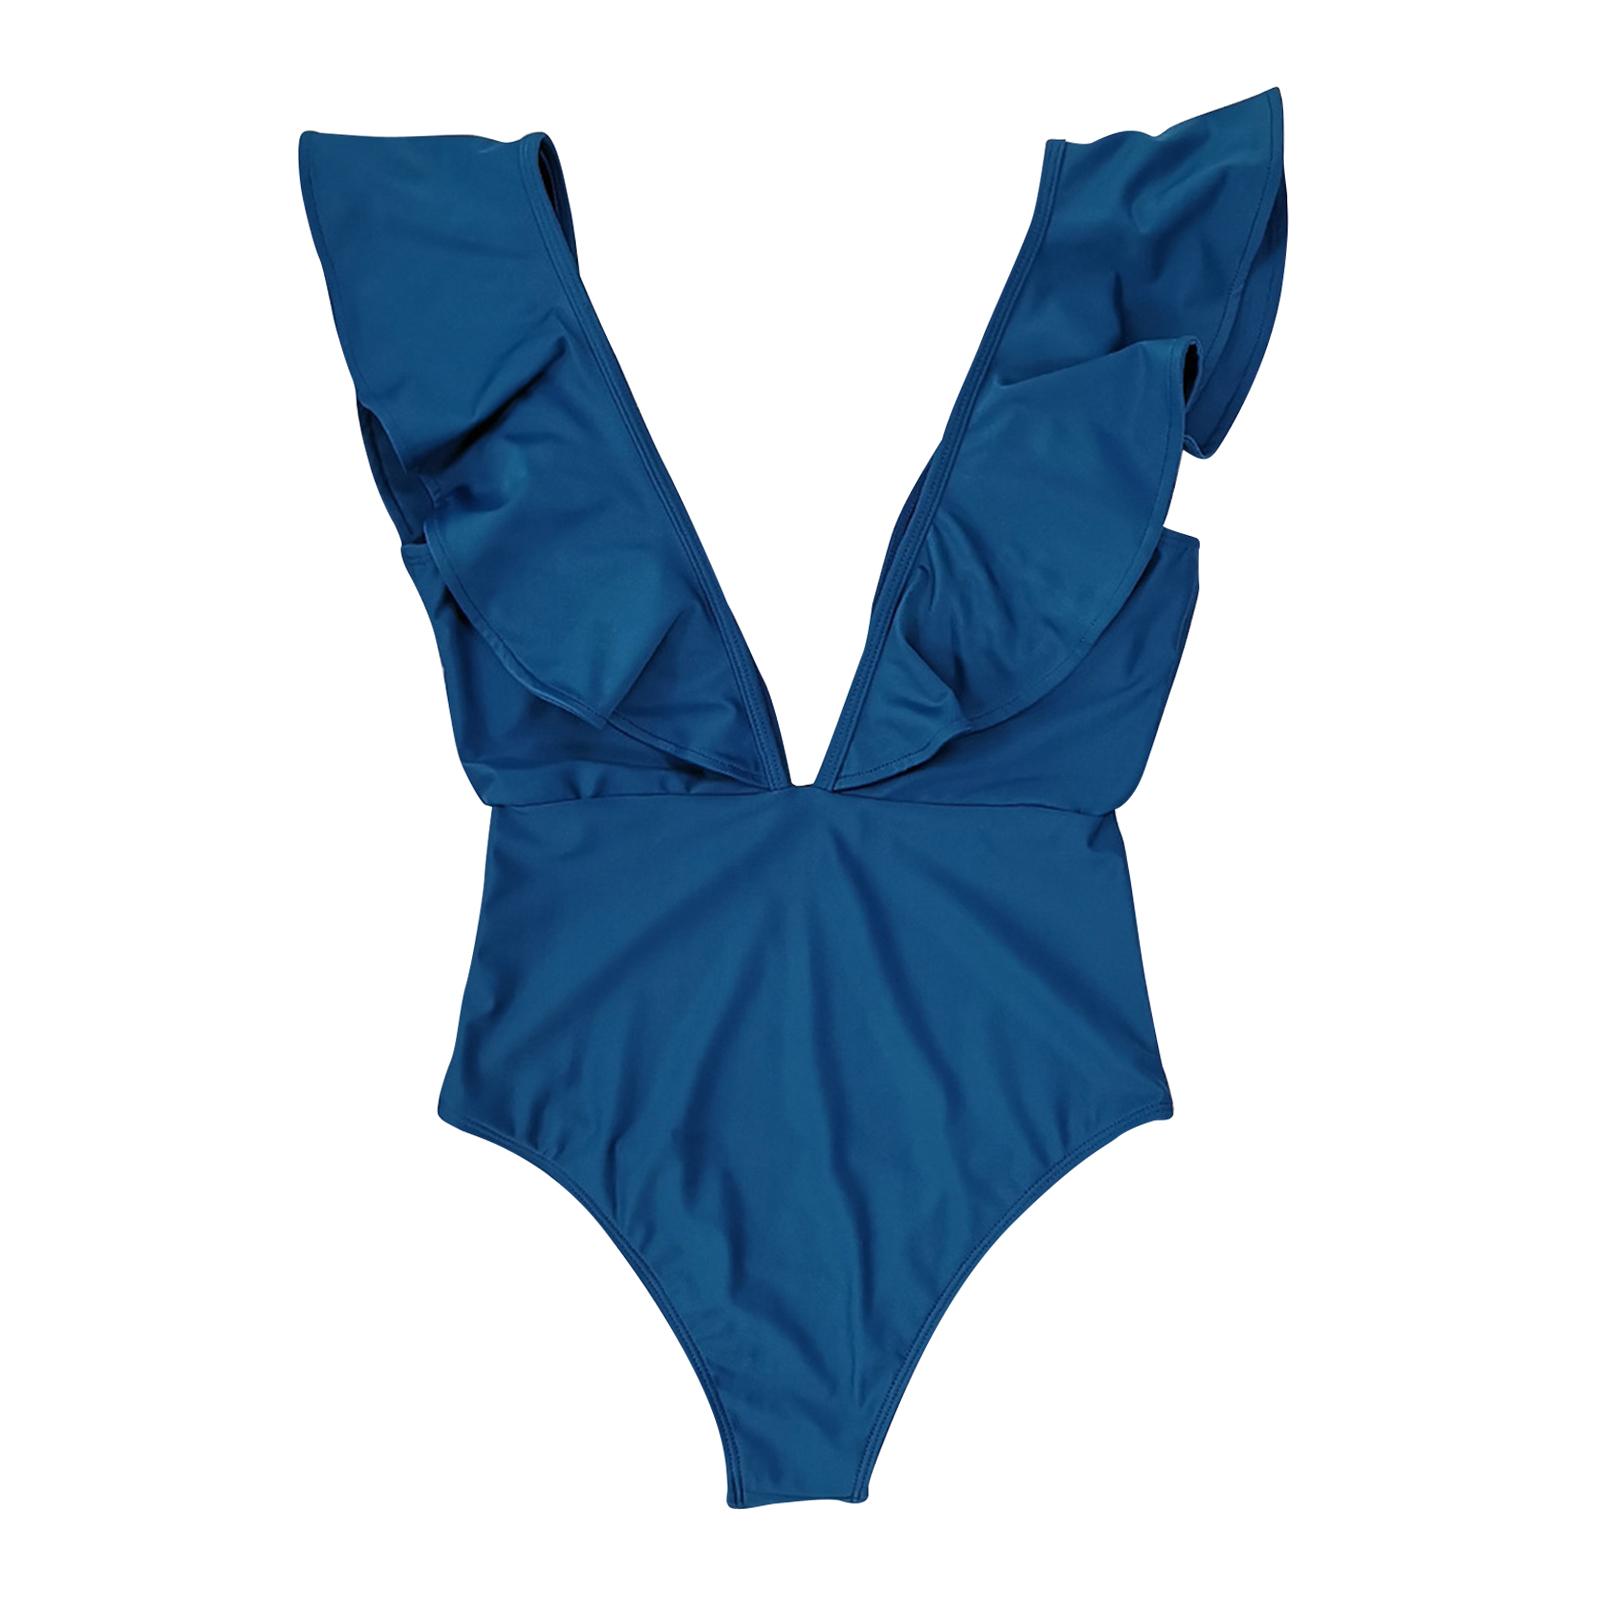 Sexy One-Piece Swimsuit Swimwear Bikini Women Bathing Suit Blue S